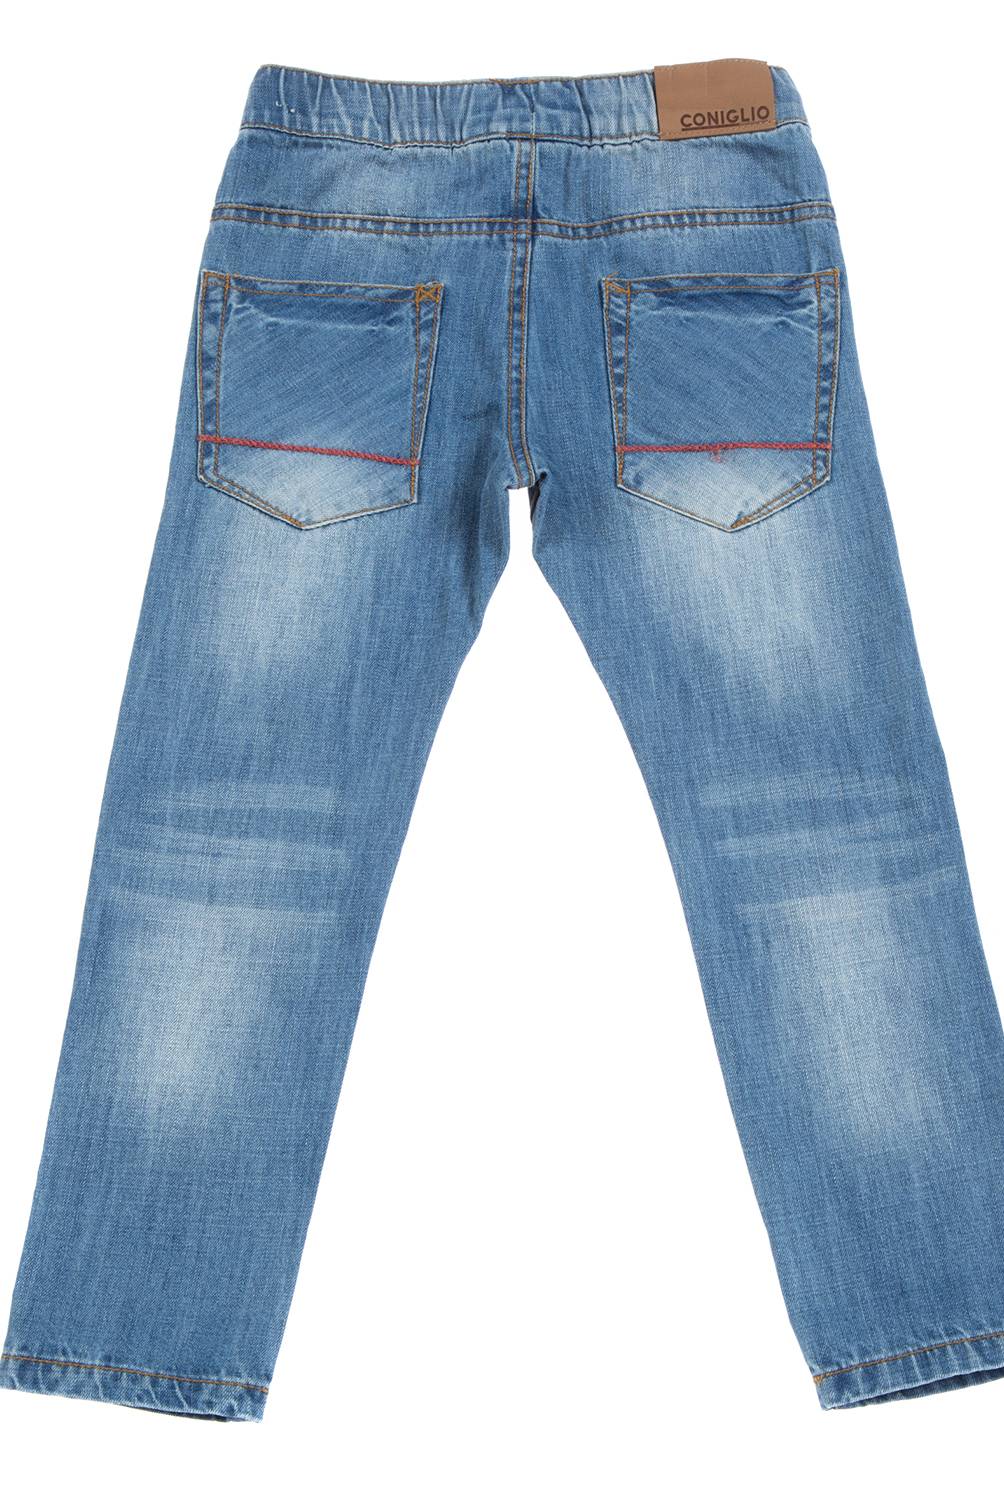 Coniglio - Jeans Moda Niño